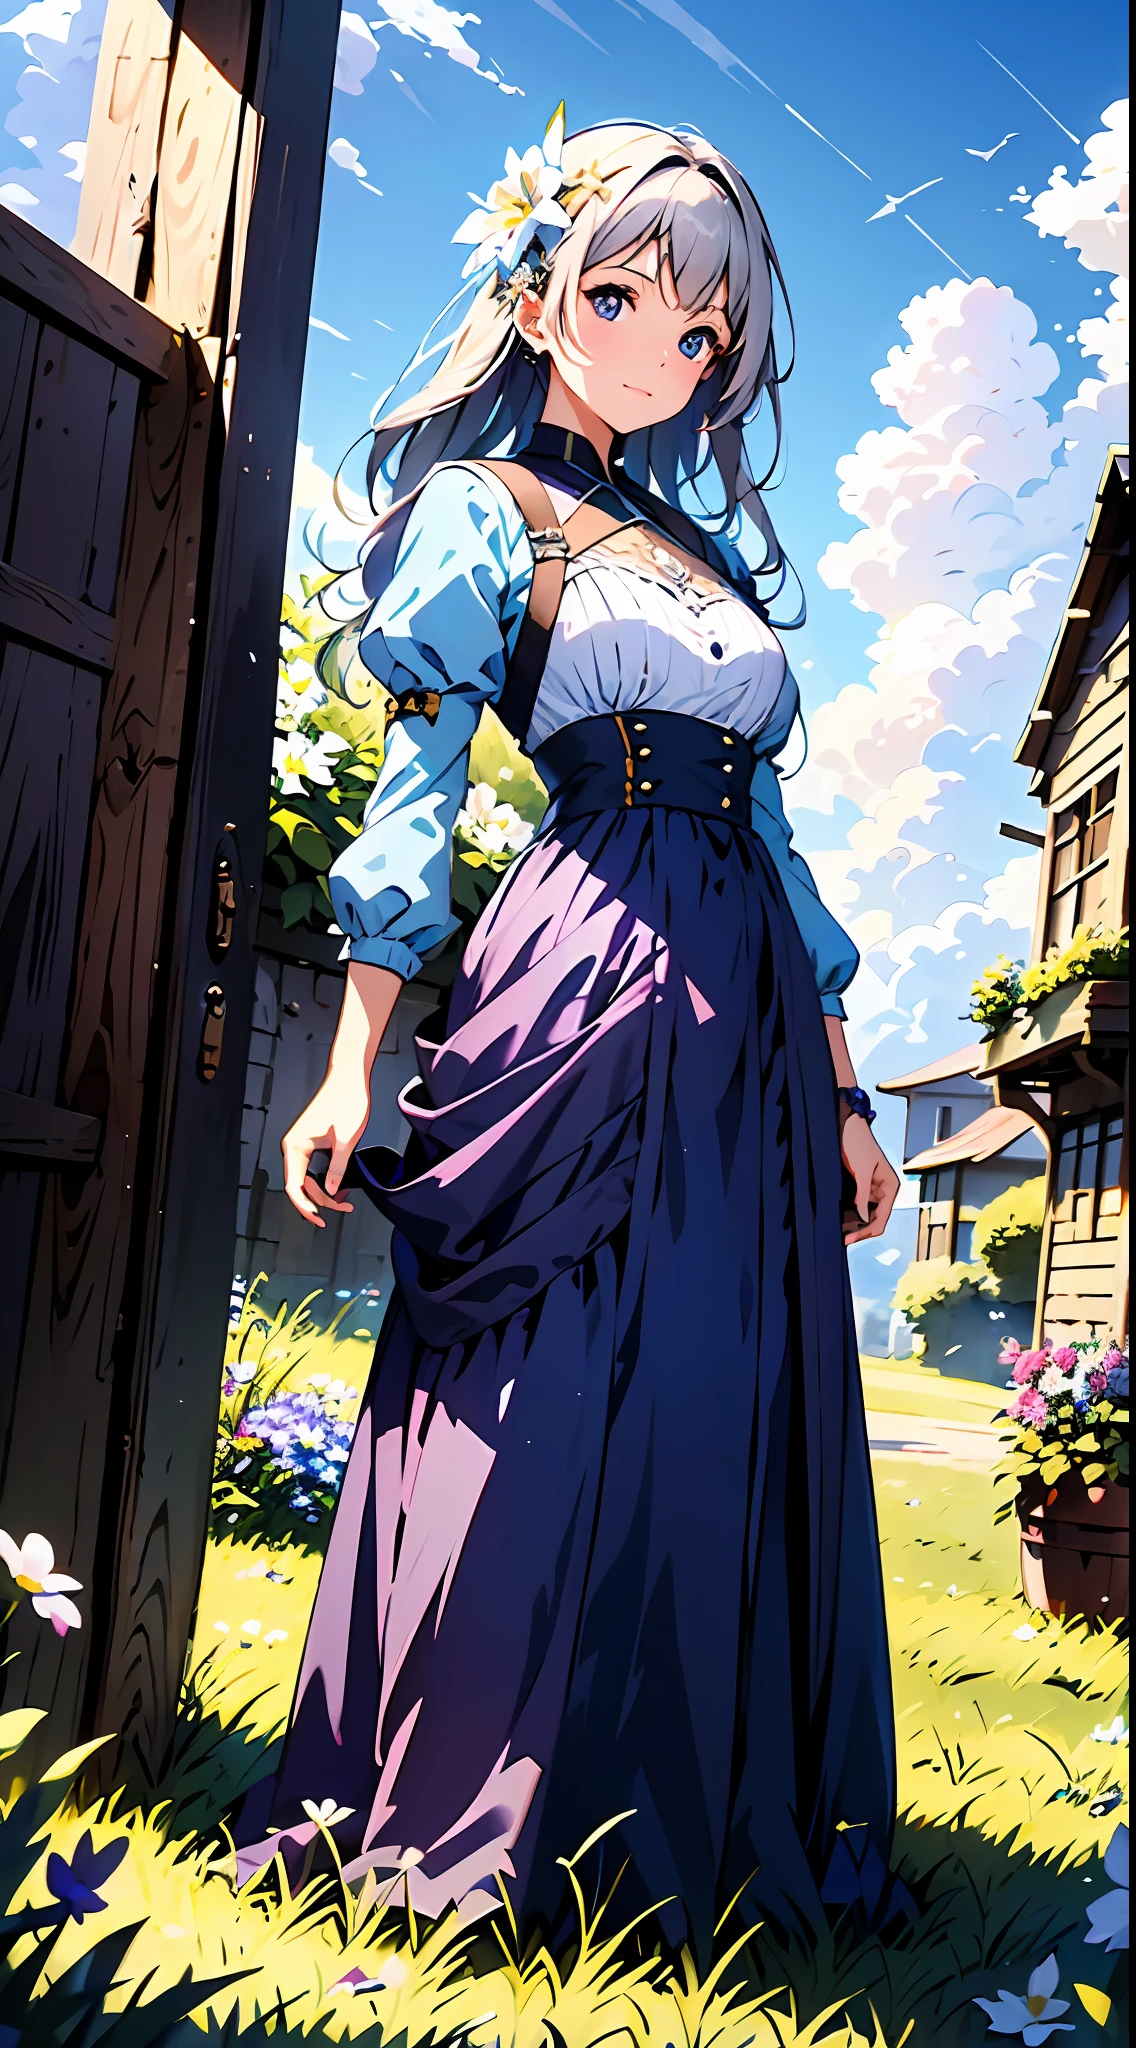 보라색 드레스를 입은 여자，푸른 하늘과 구름을 배경으로, 하얀 드레스를 입는다，그 위에 꽃이 있어요, 아트배아, Rosla 글로벌 조명, 상세한 그림, 판타지 아트